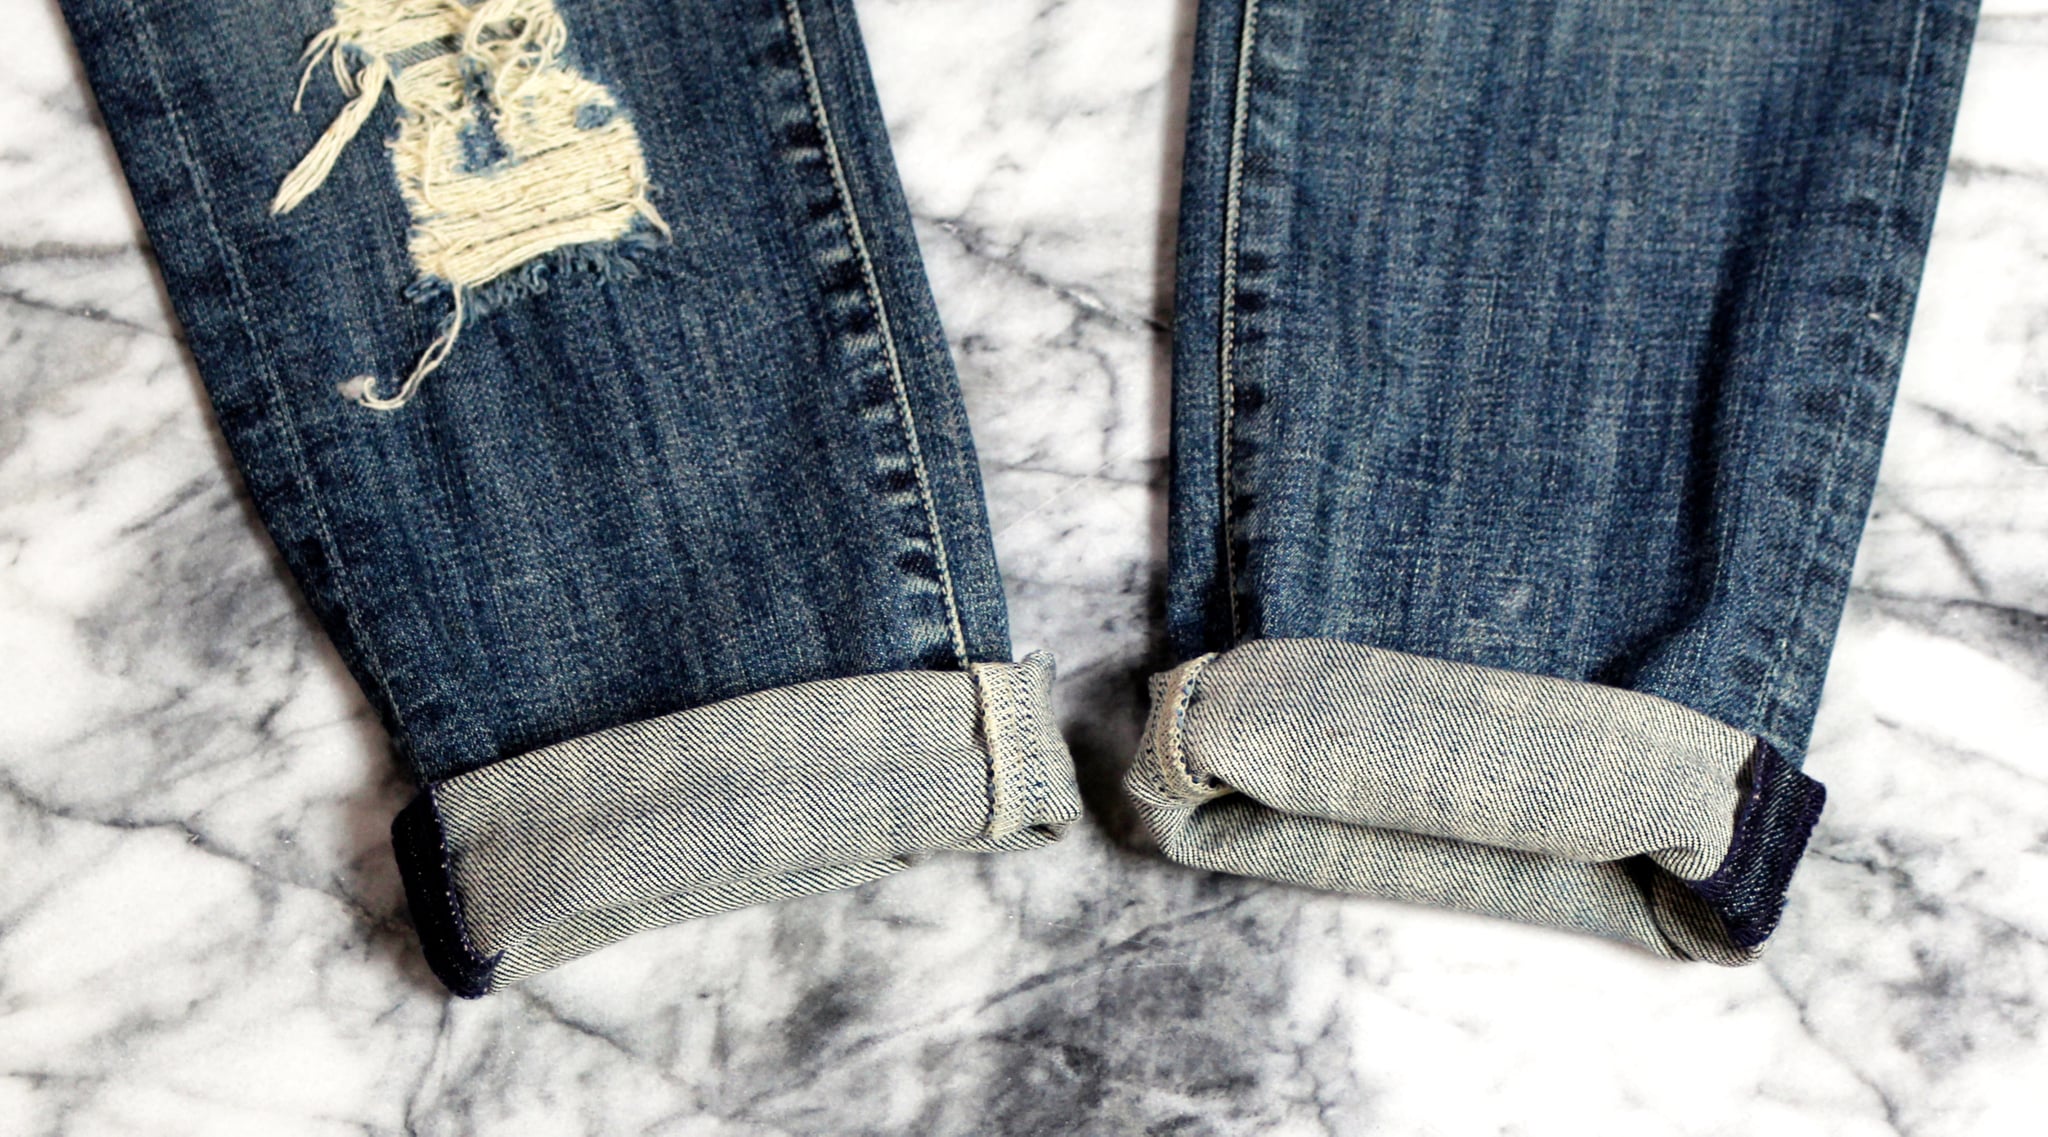 Как красиво подвернуть джинсы женские под кроссовки поэтапно фото